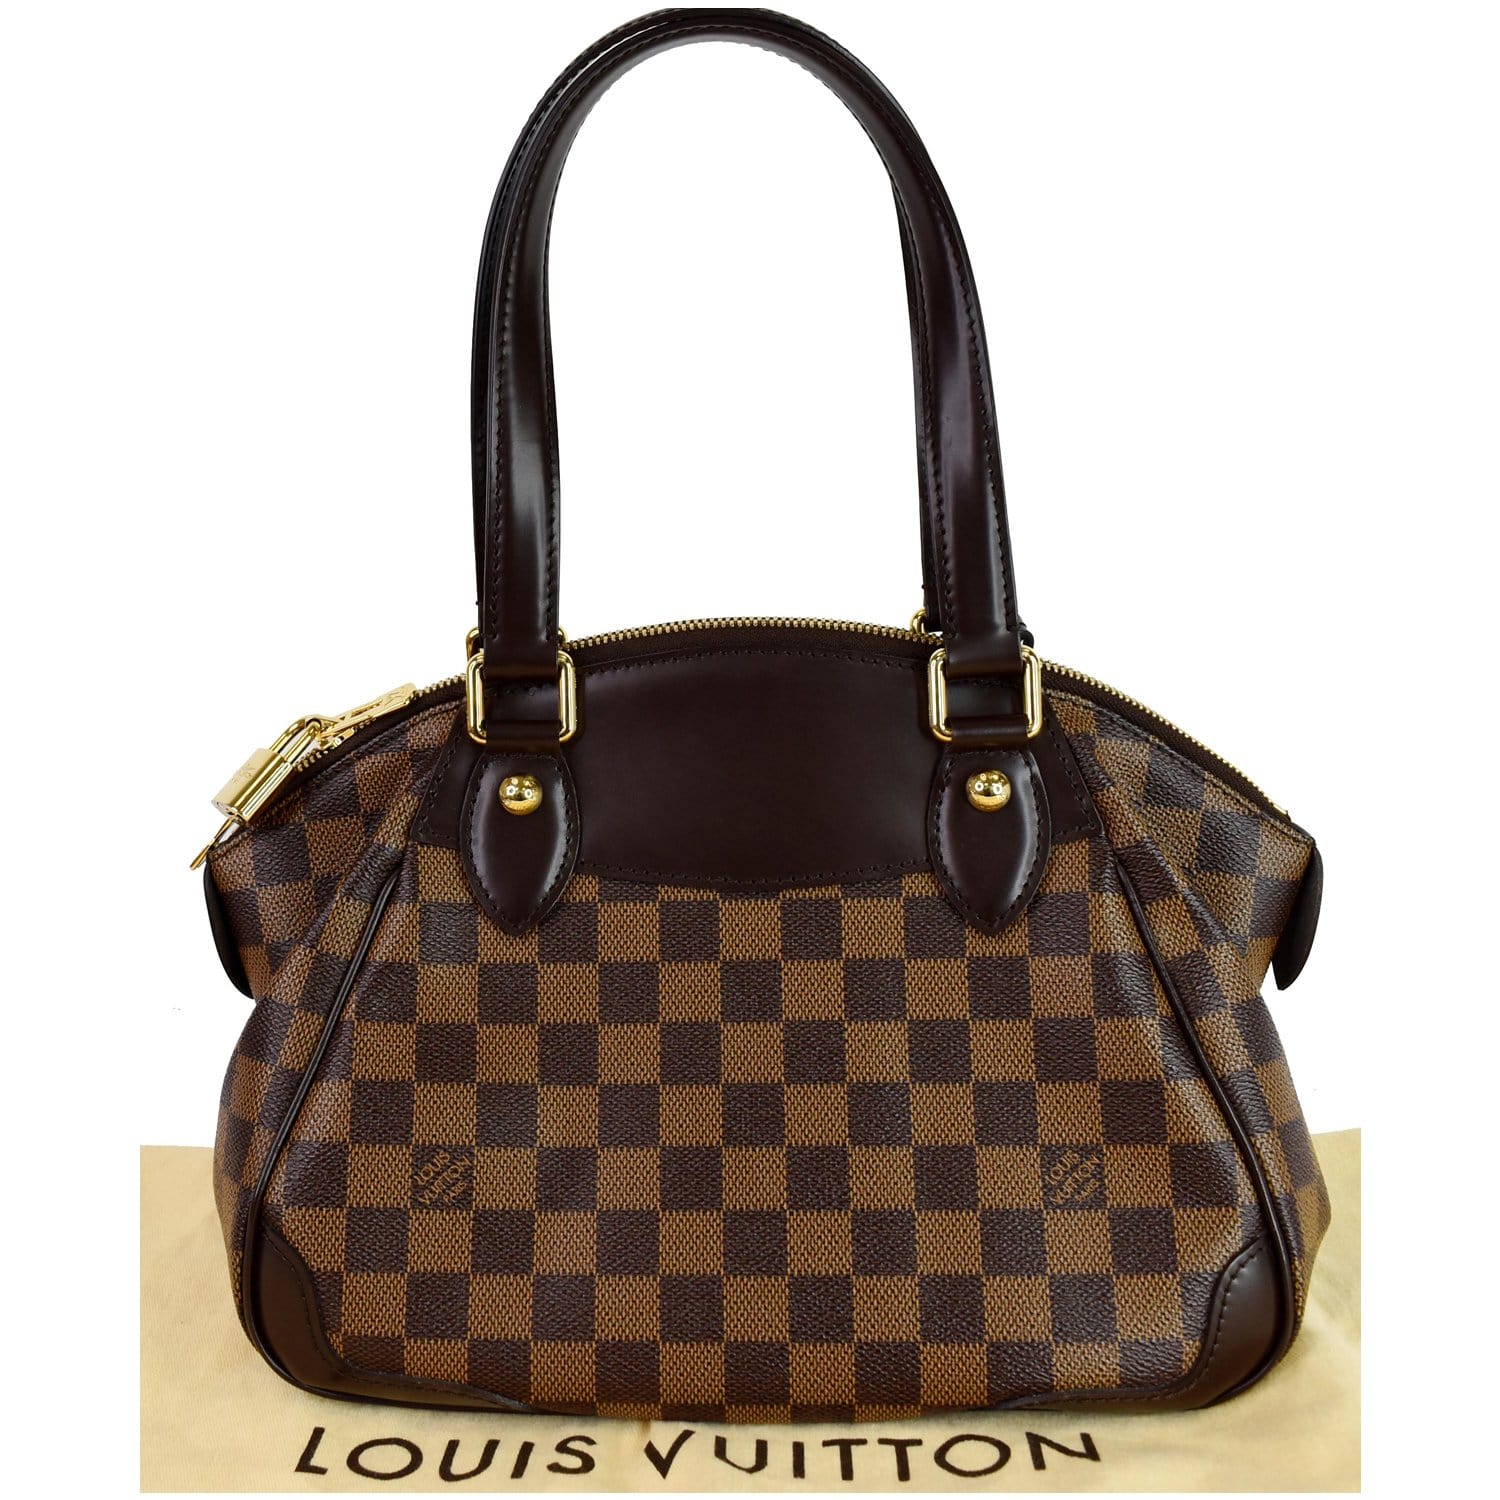 Louis Vuitton Damier Ebene Verona PM, Louis Vuitton Handbags